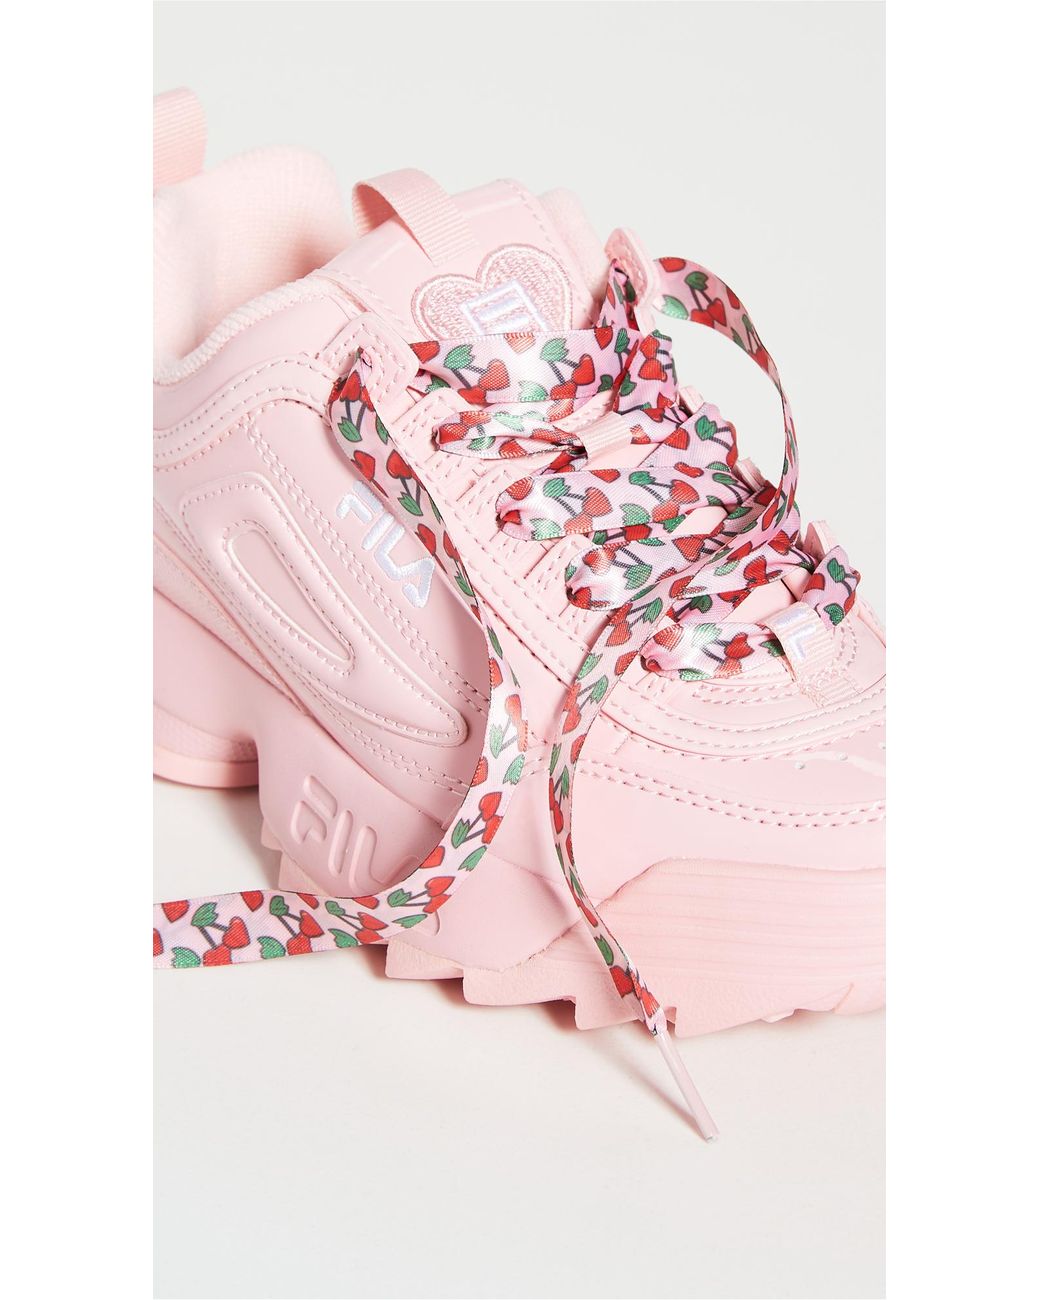 Fila Disruptor Ii Heart Sneakers in Pink | Lyst